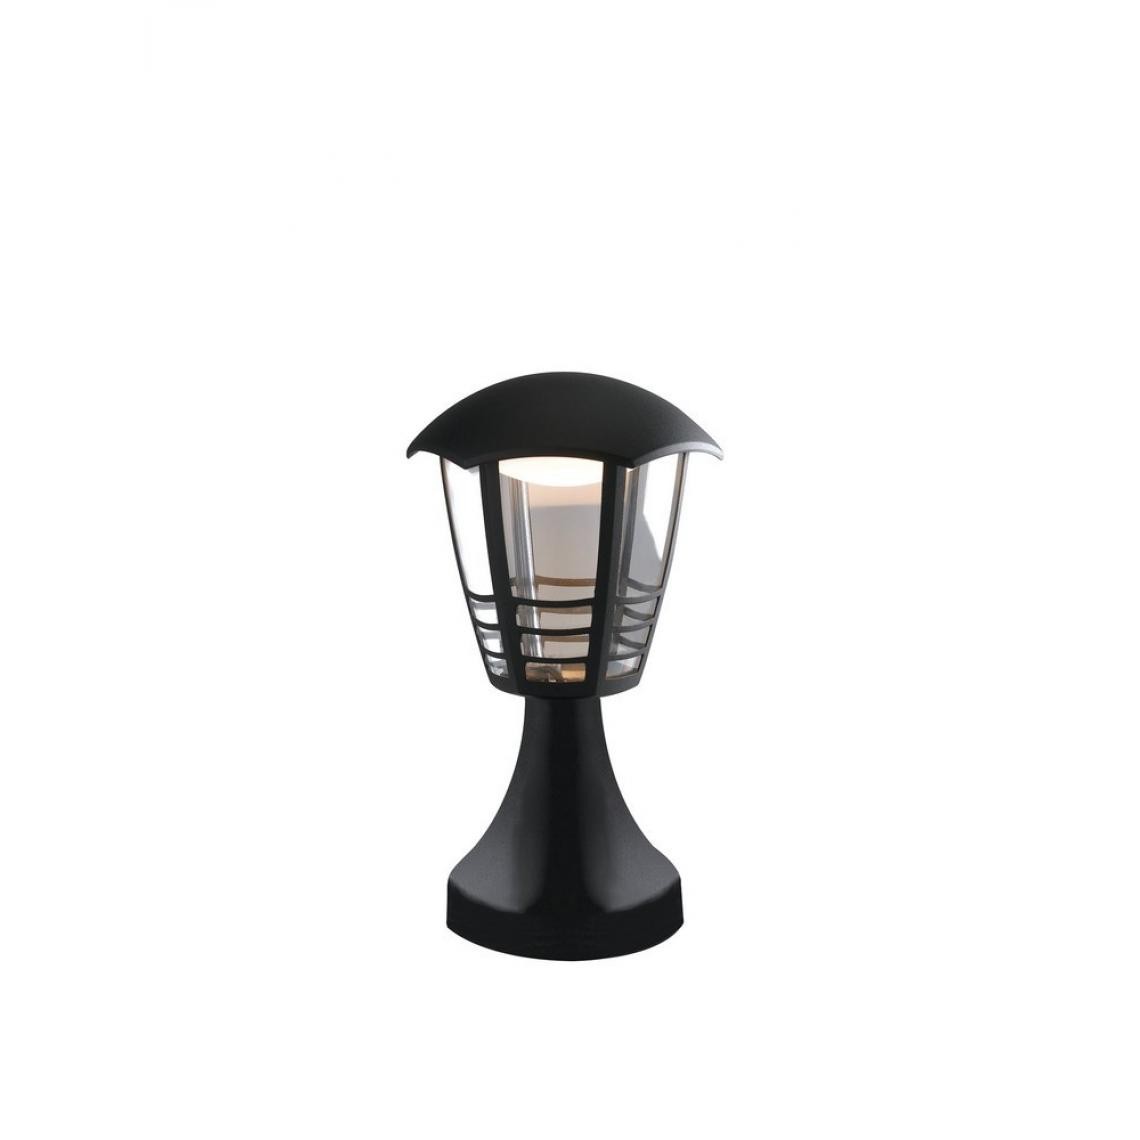 Fan Europe - Borne LED Extérieure Noir, IP44 800lm 4000K 17x29.7cm - Lampadaire